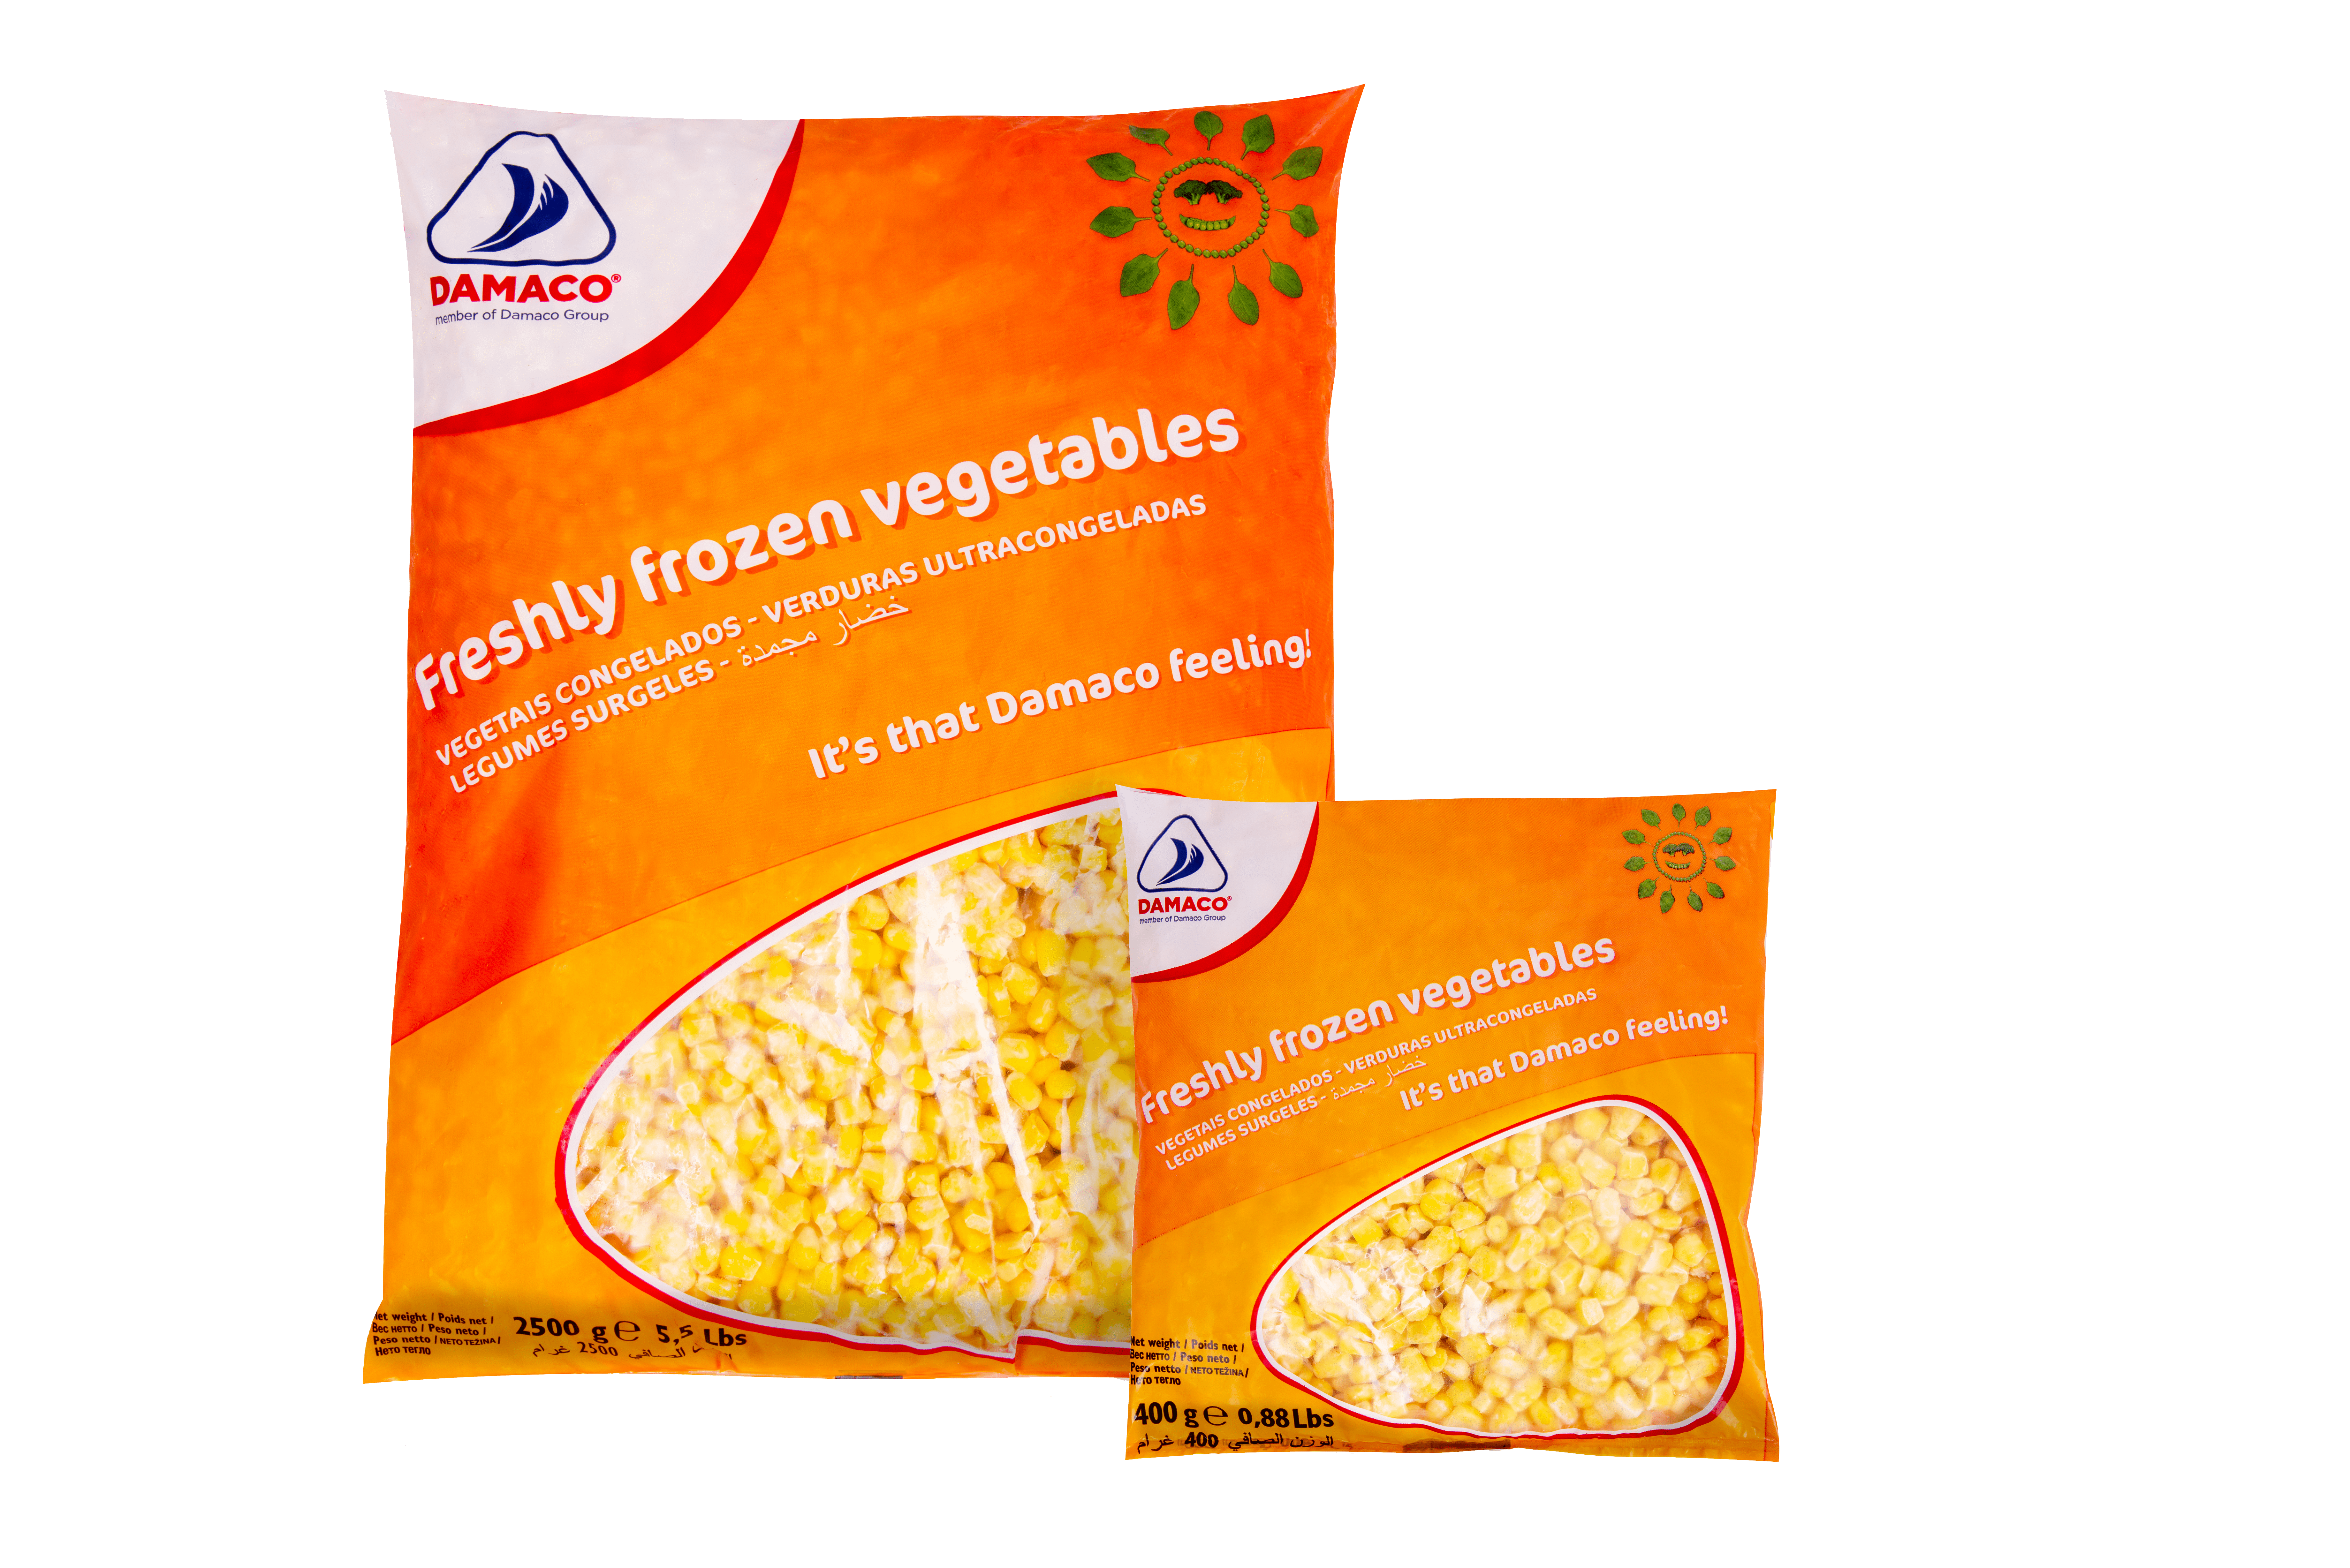 sweet corn Damaco brand packaging